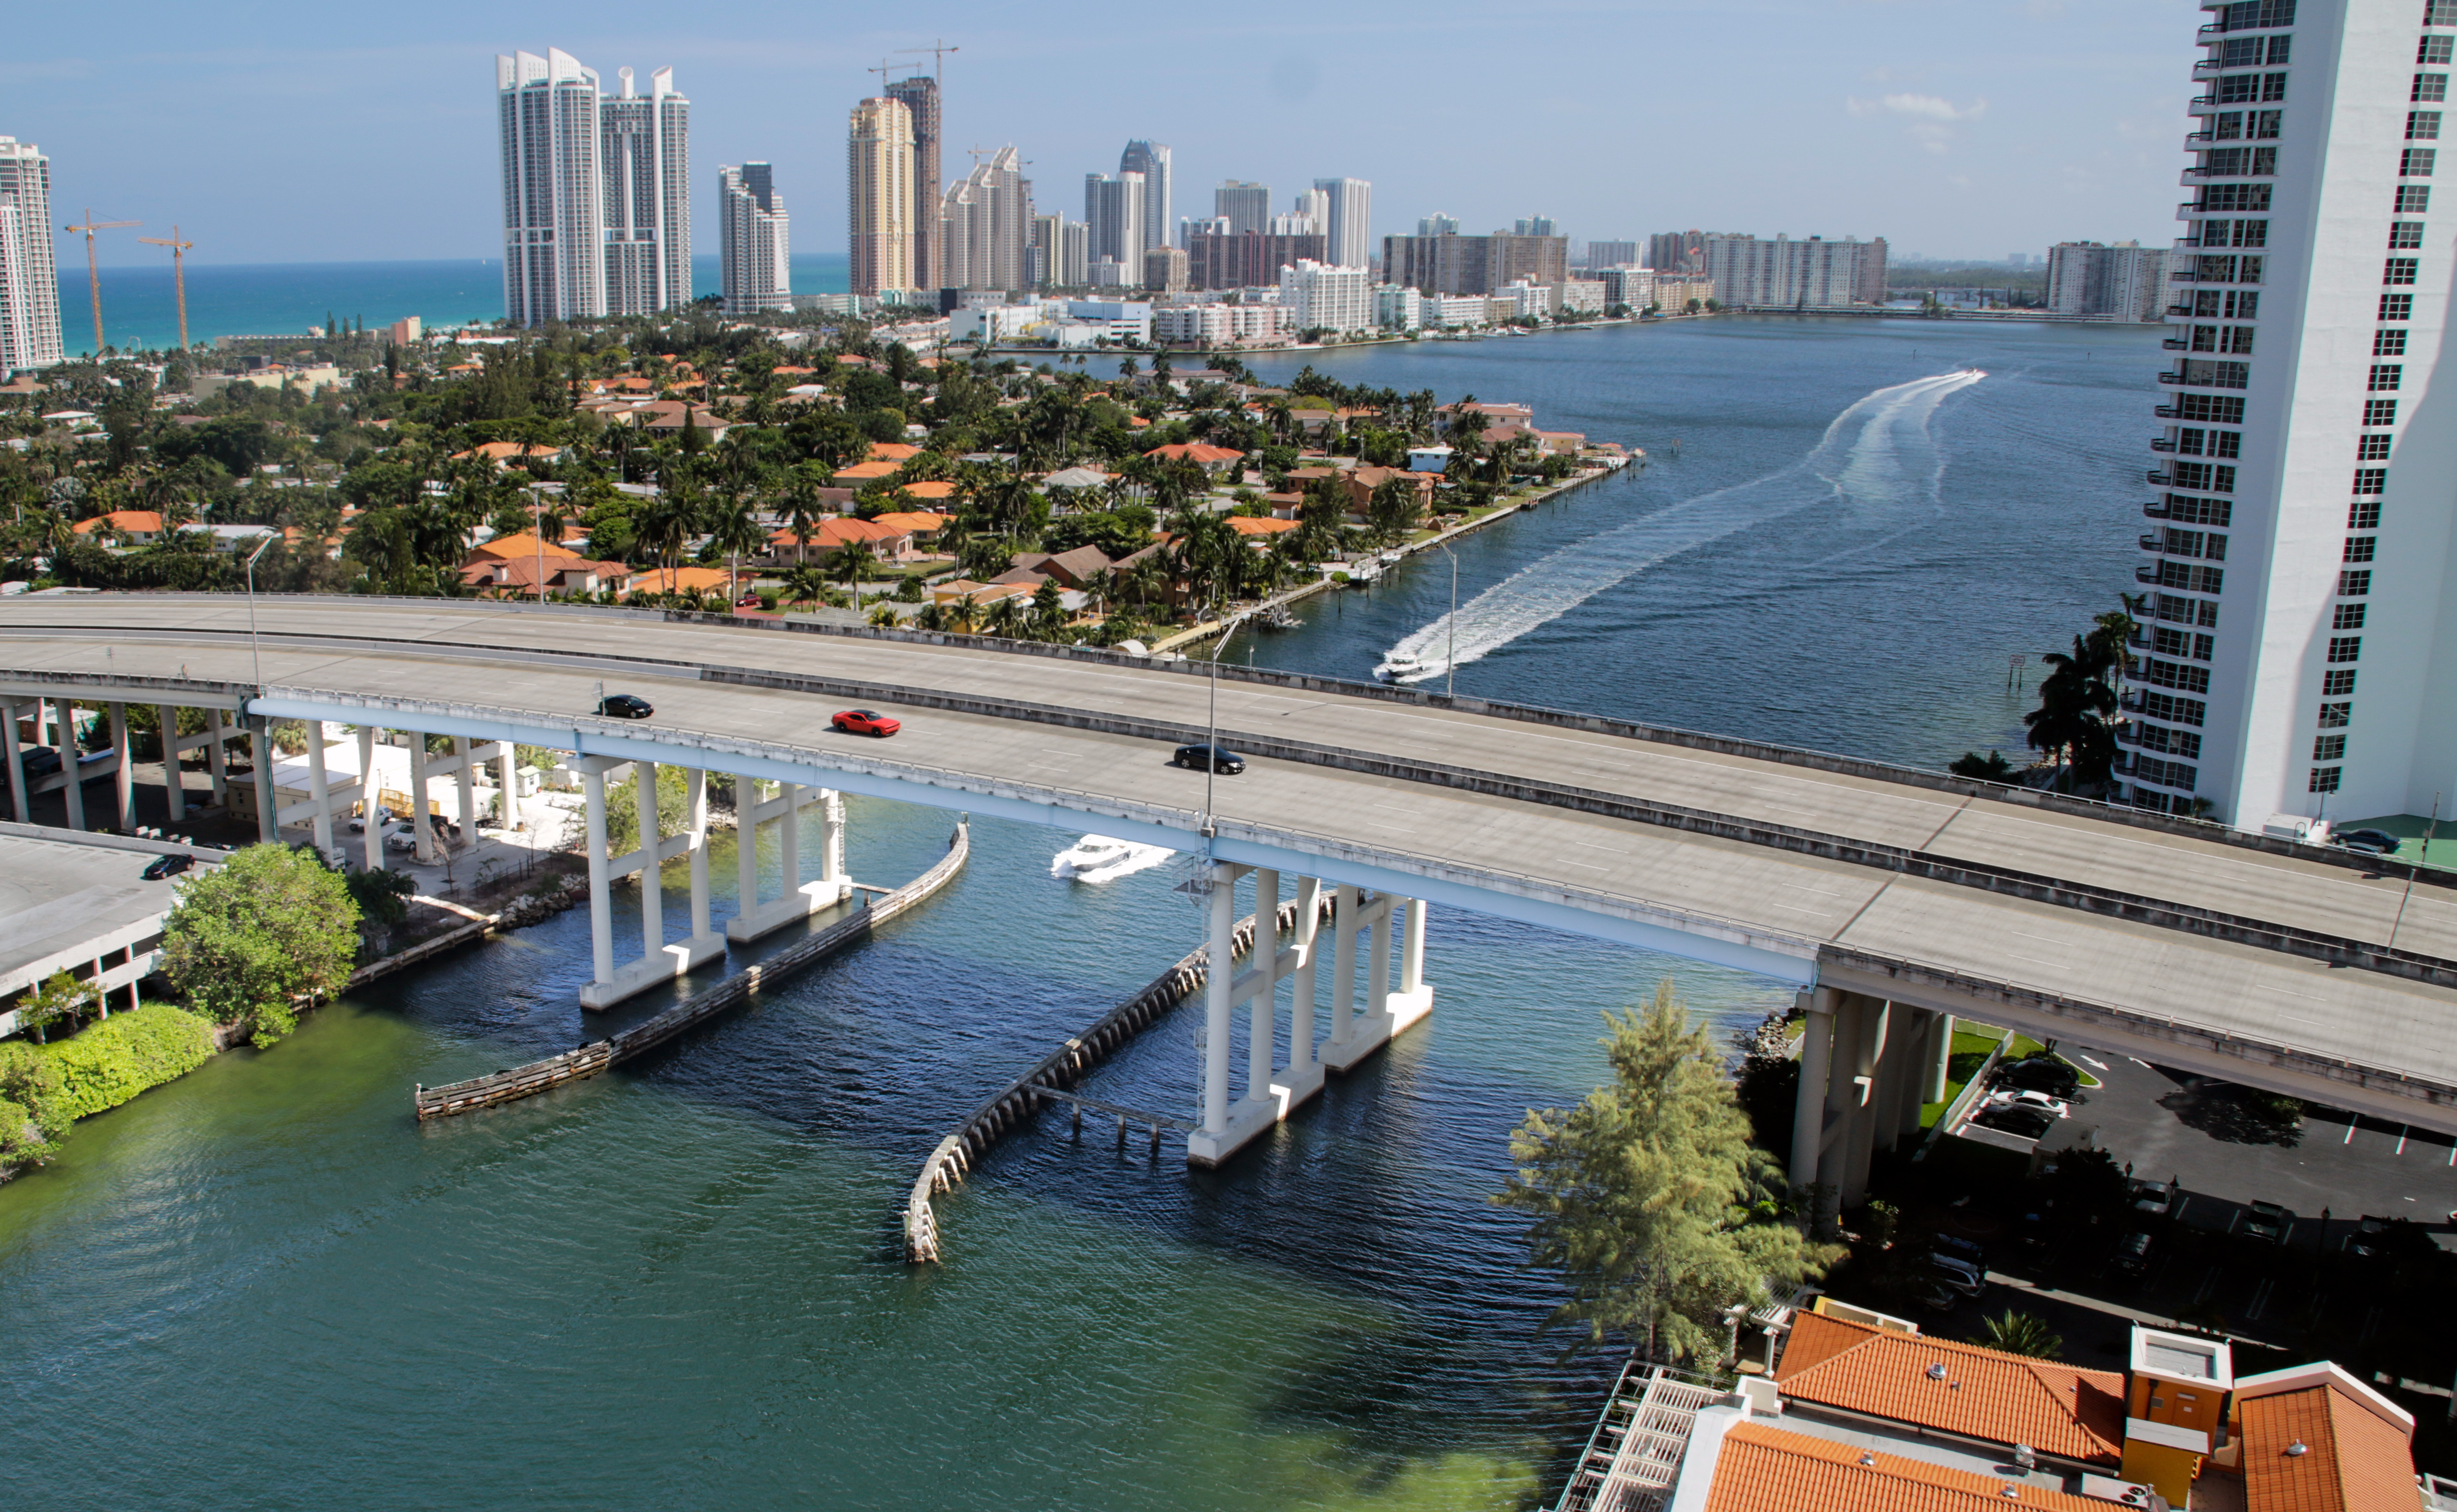 Canva – Bridge Over Miami Beach